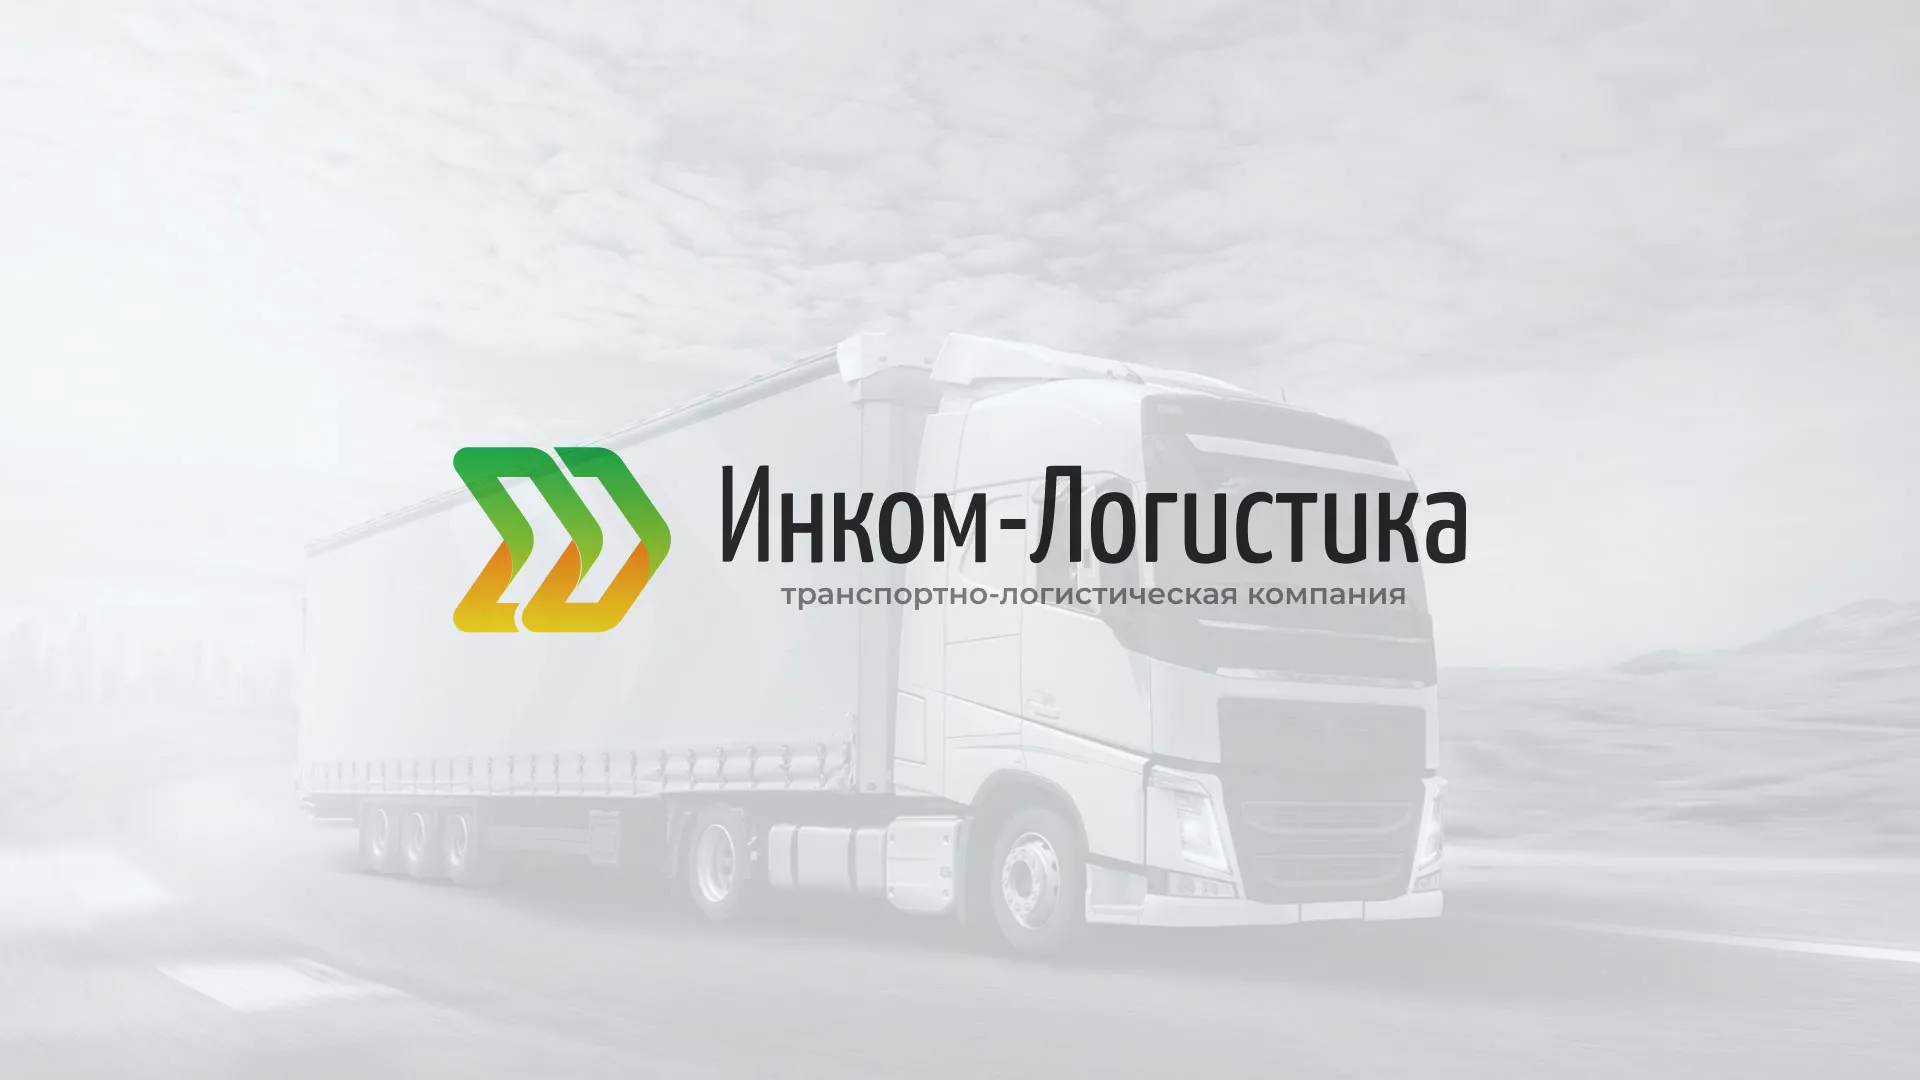 Разработка логотипа и сайта компании «Инком-Логистика» в Высоцке